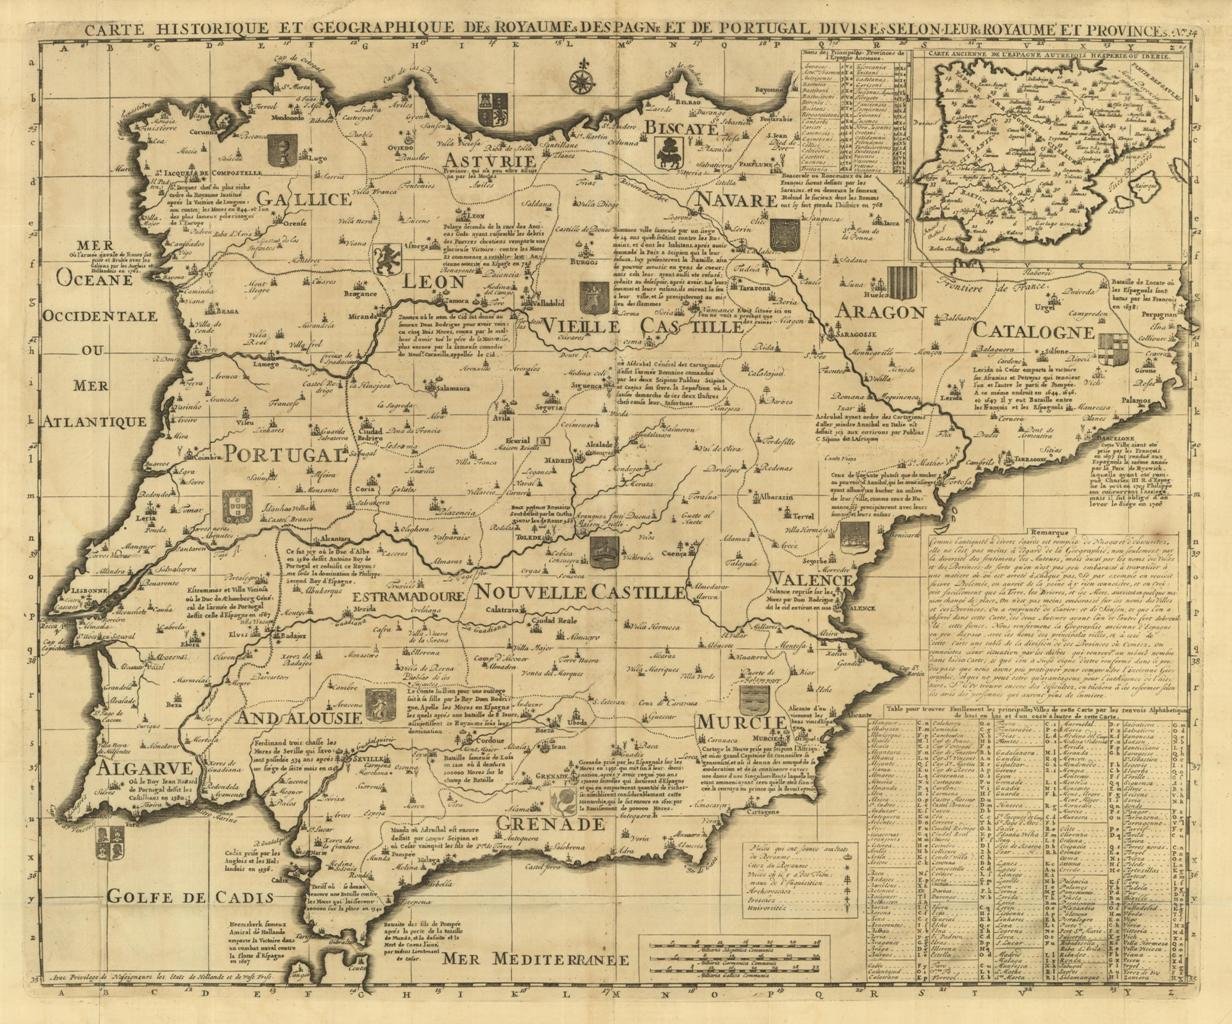 Carte historique et géographique des royaumes d'Espagne et de Portugal …